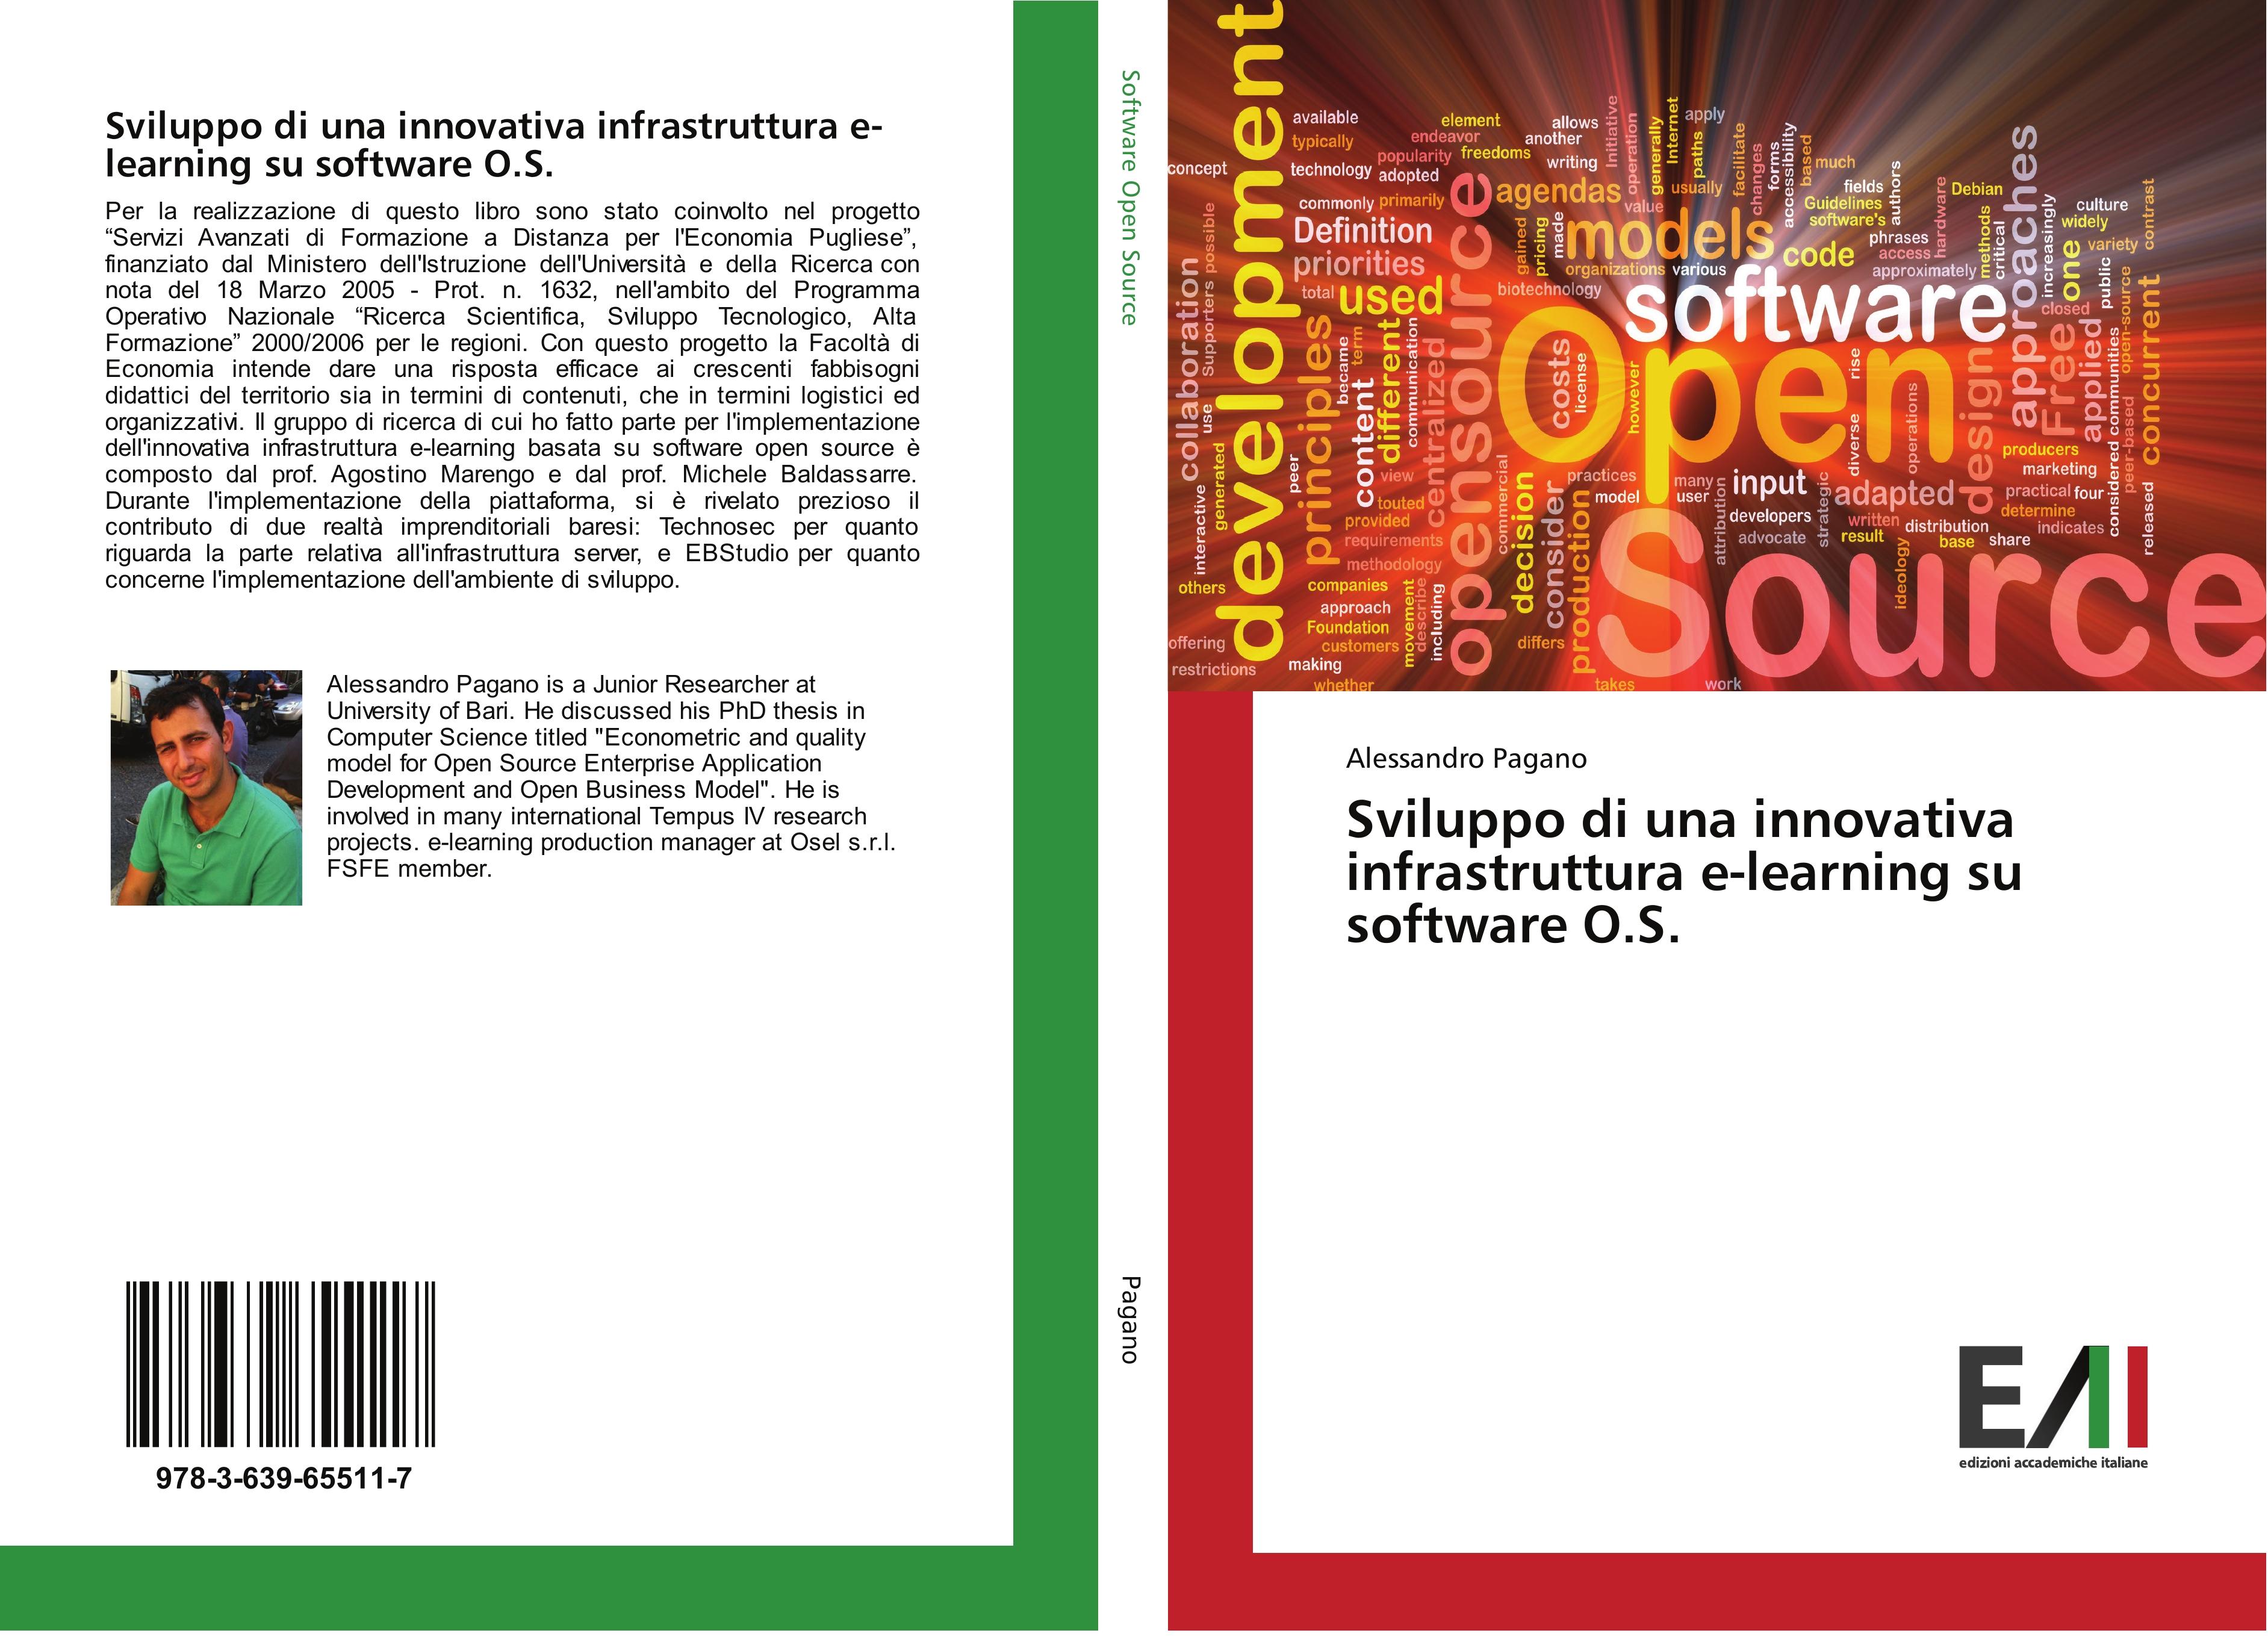 Sviluppo di una innovativa infrastruttura e-learning su software O.S. - Alessandro Pagano